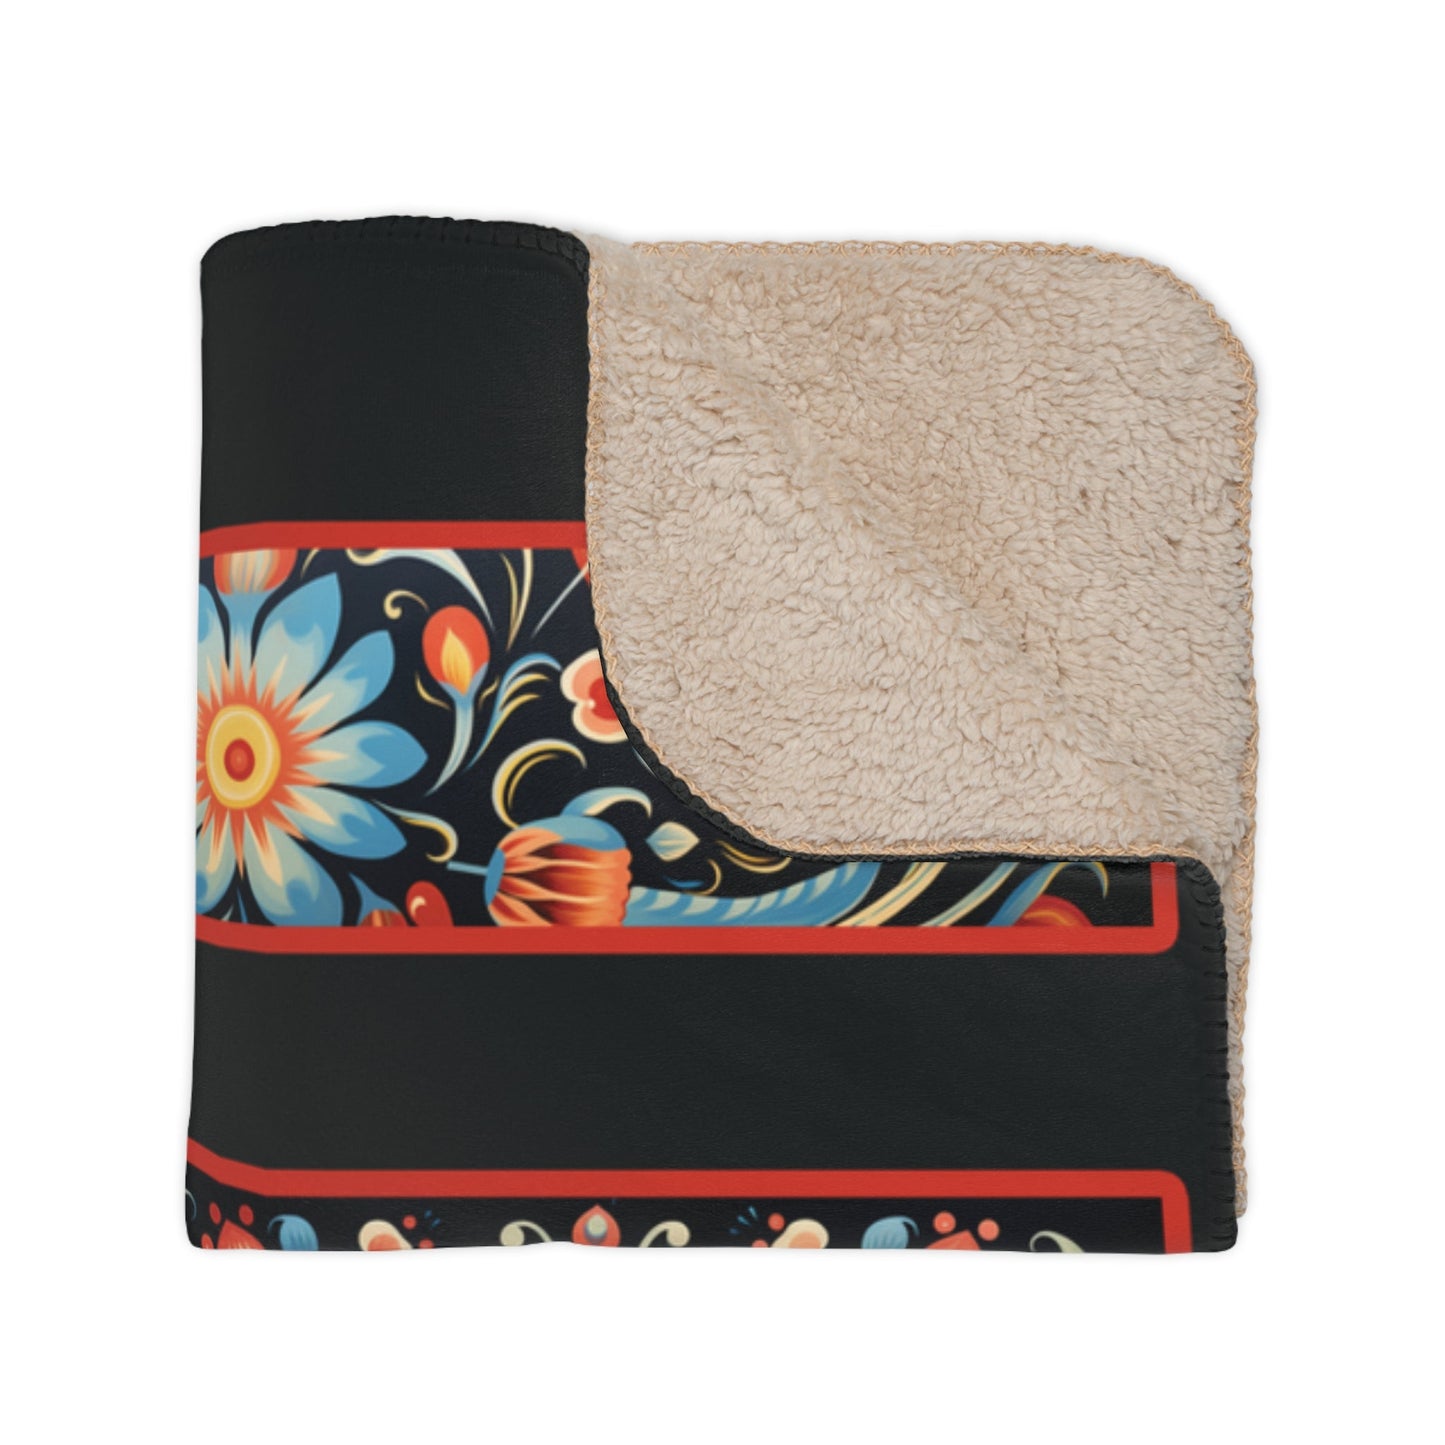 Scandi Folk Art Black Cat Blanket, Scandinavian Art Style - Boho Design Throw - FlooredByArt